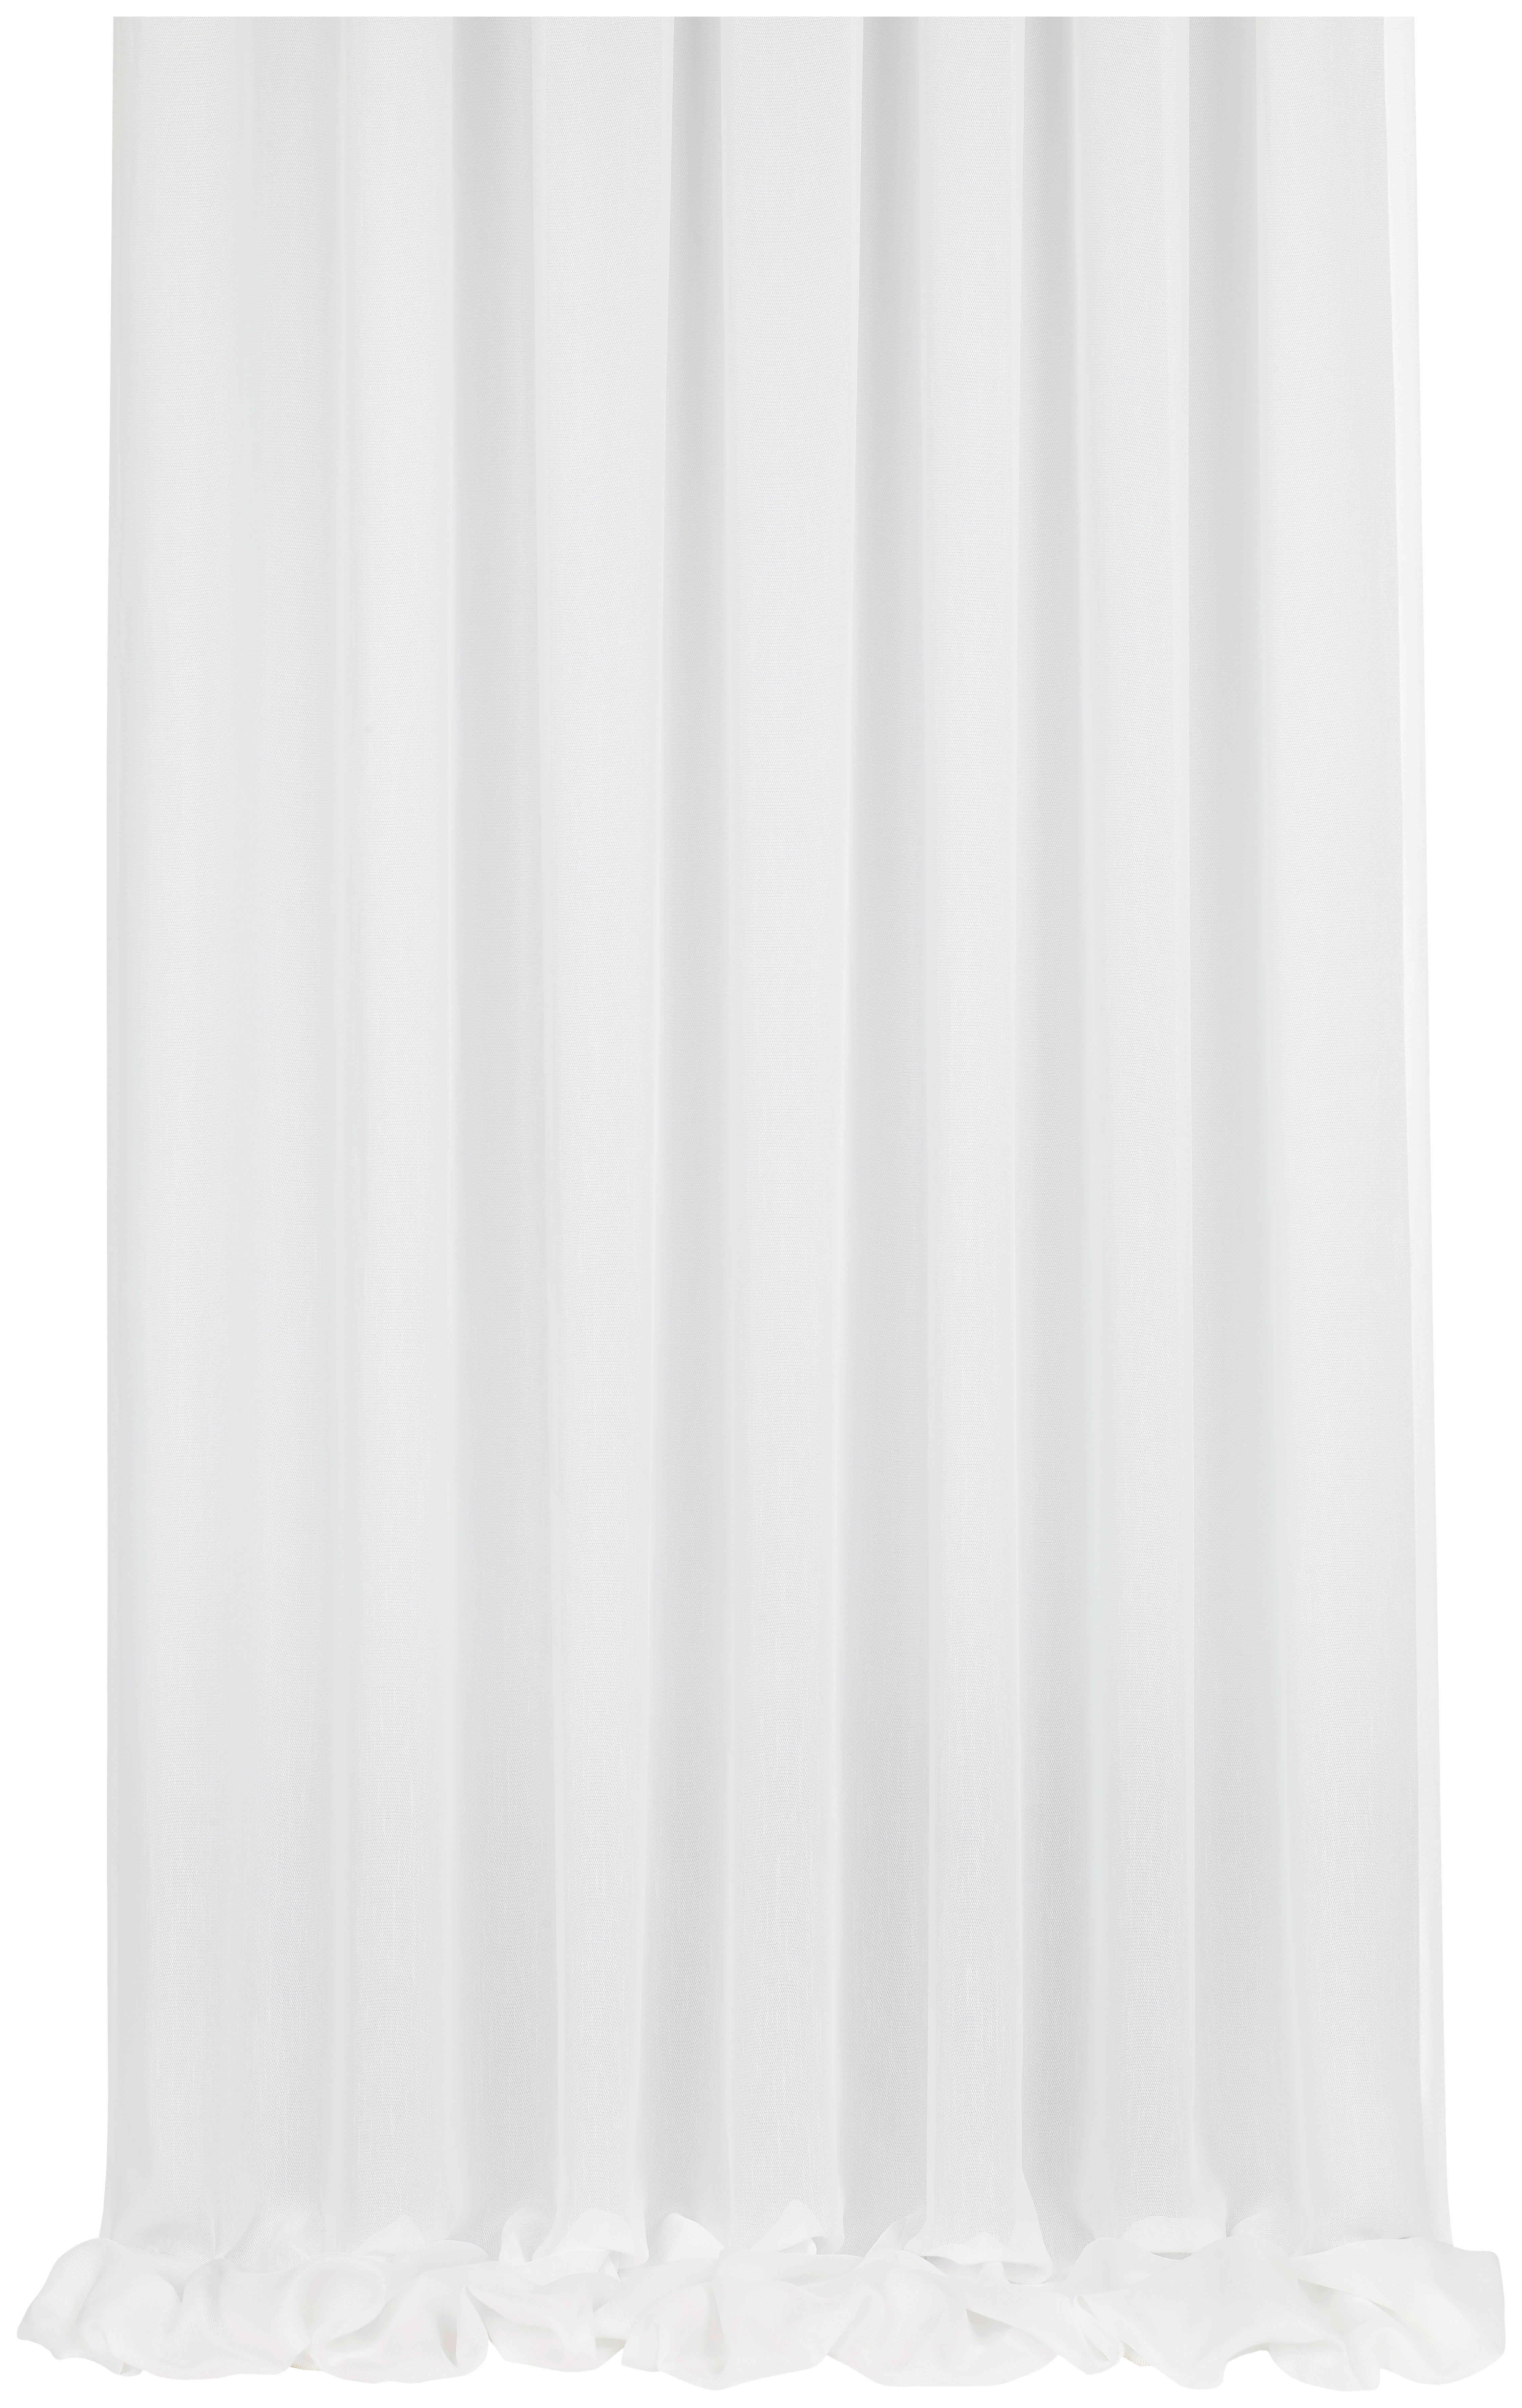 ZÁCLONA, polopriehľadné, 295 cm - biela, Konventionell, textil (295cm) - Esposa